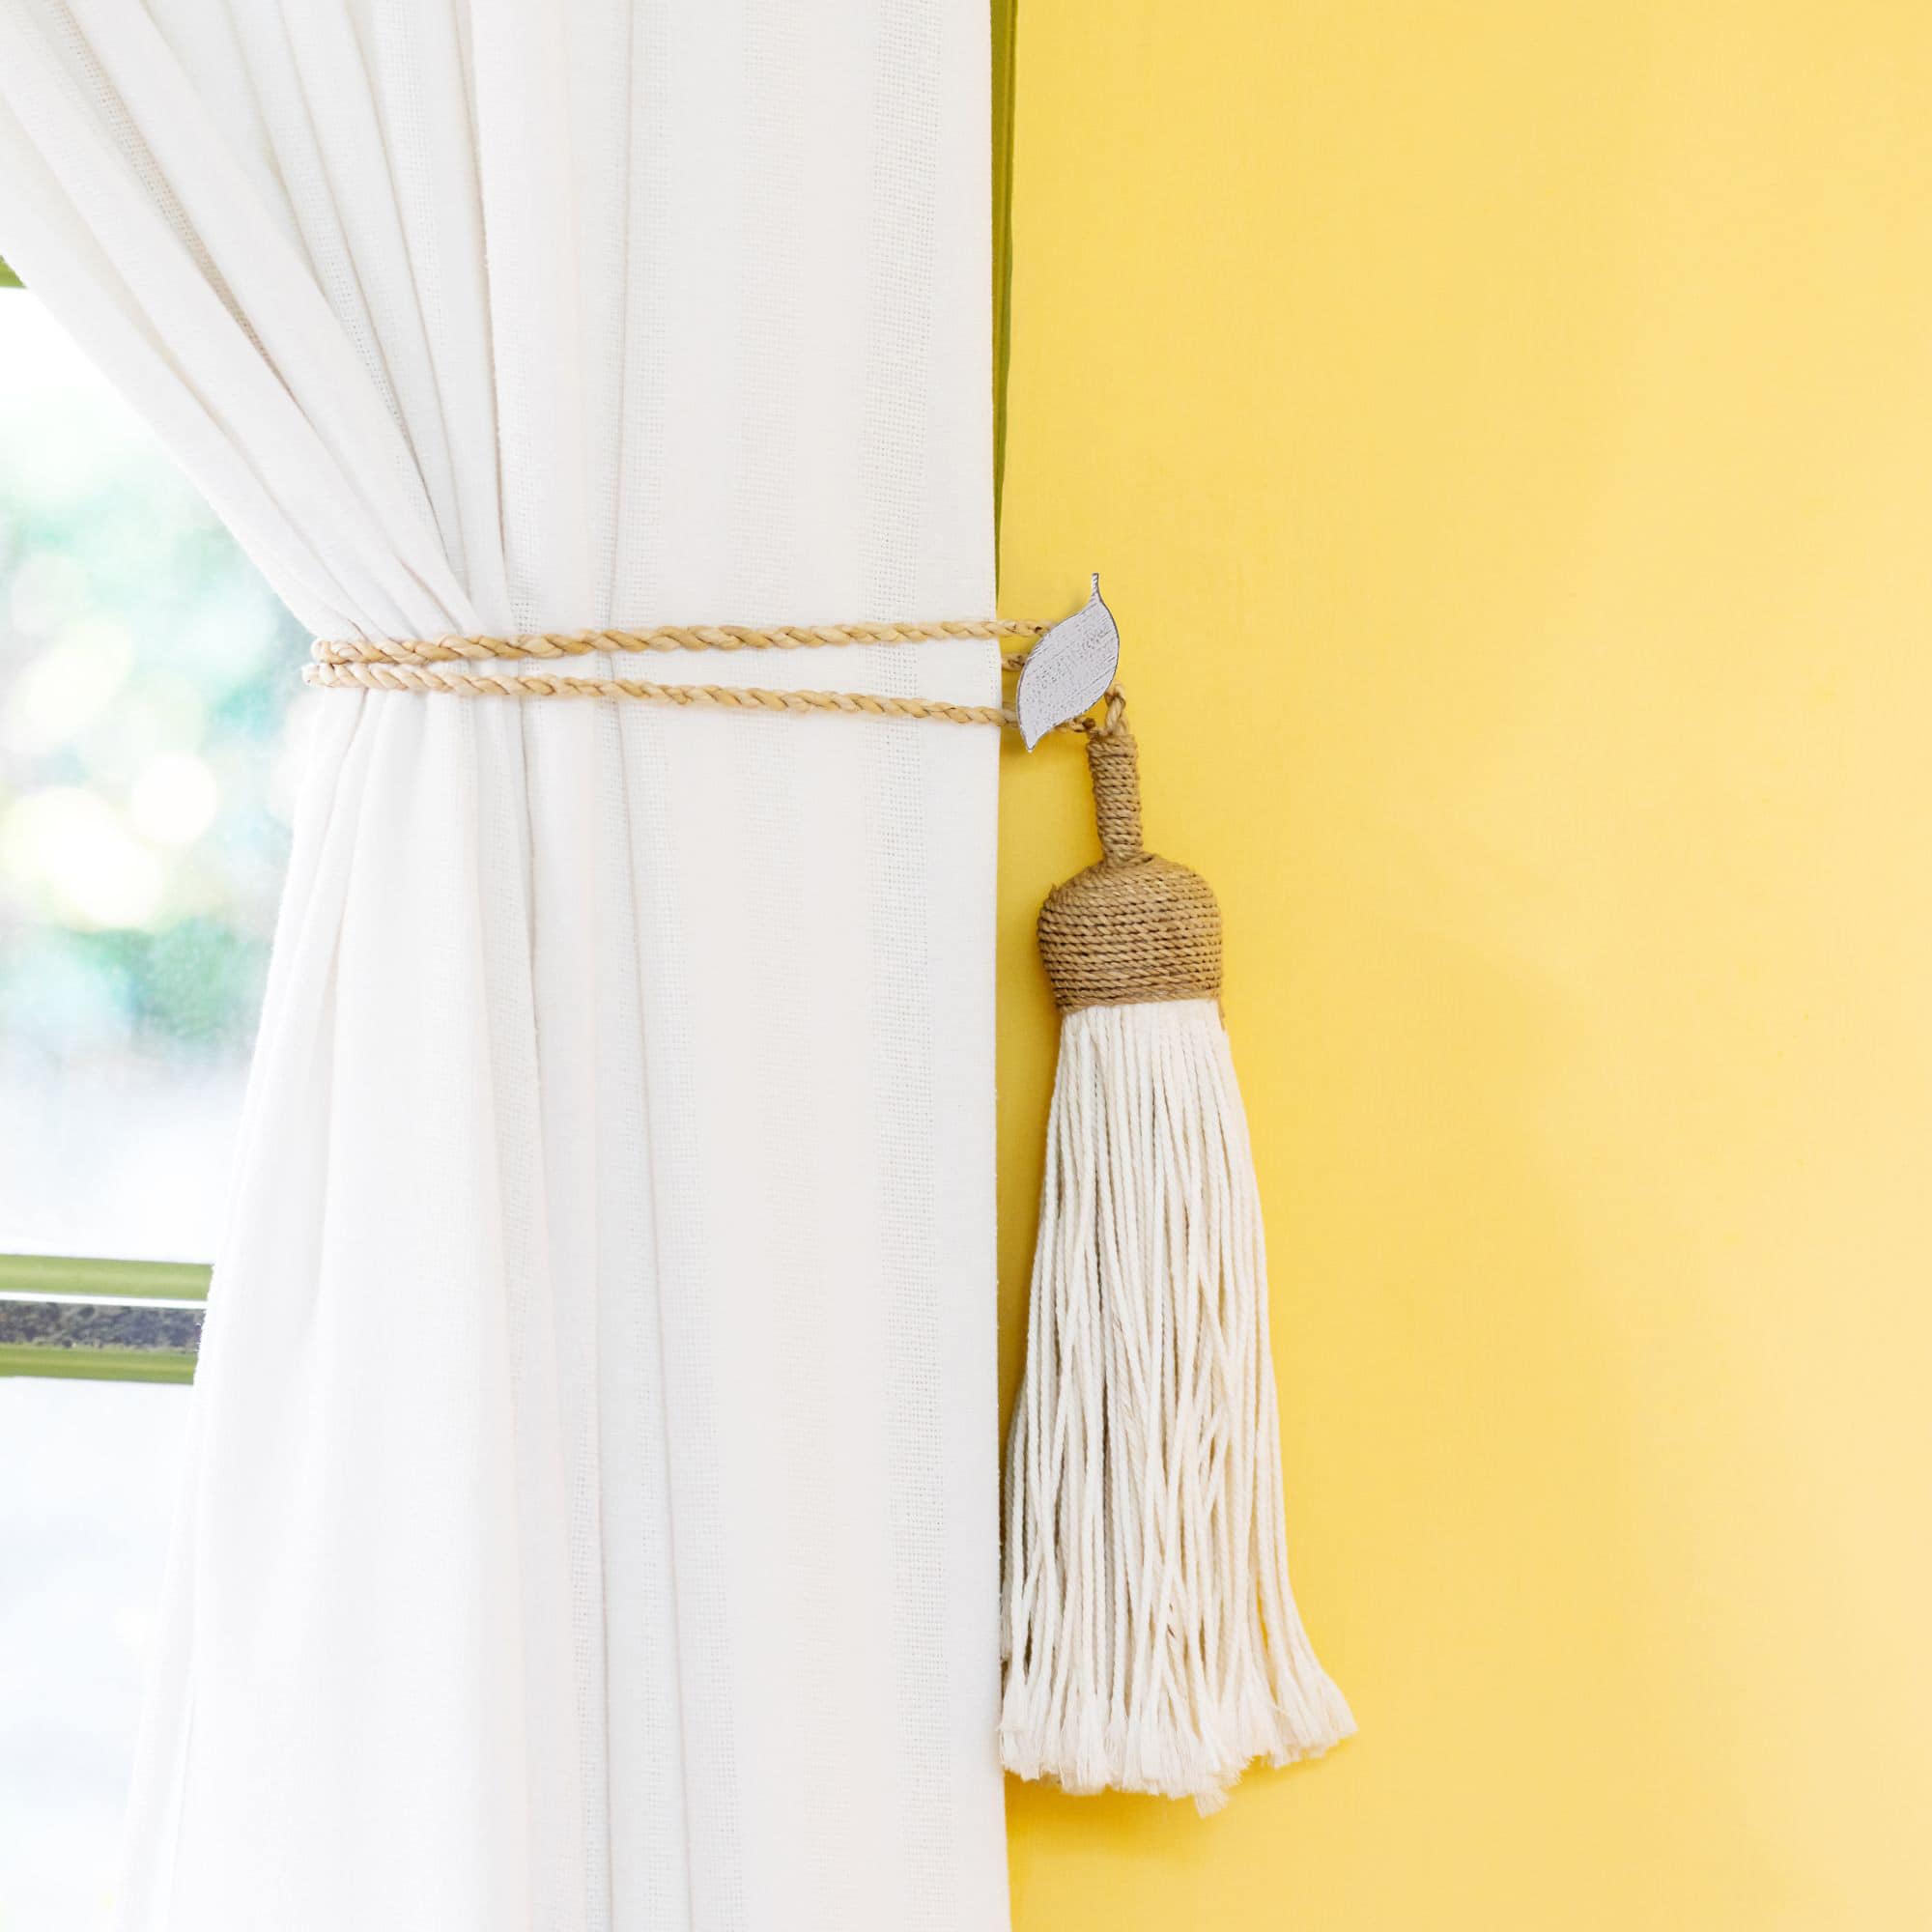 par de ganchos metálicos para sujetar cortinas en blanco y dorado con diseño natural